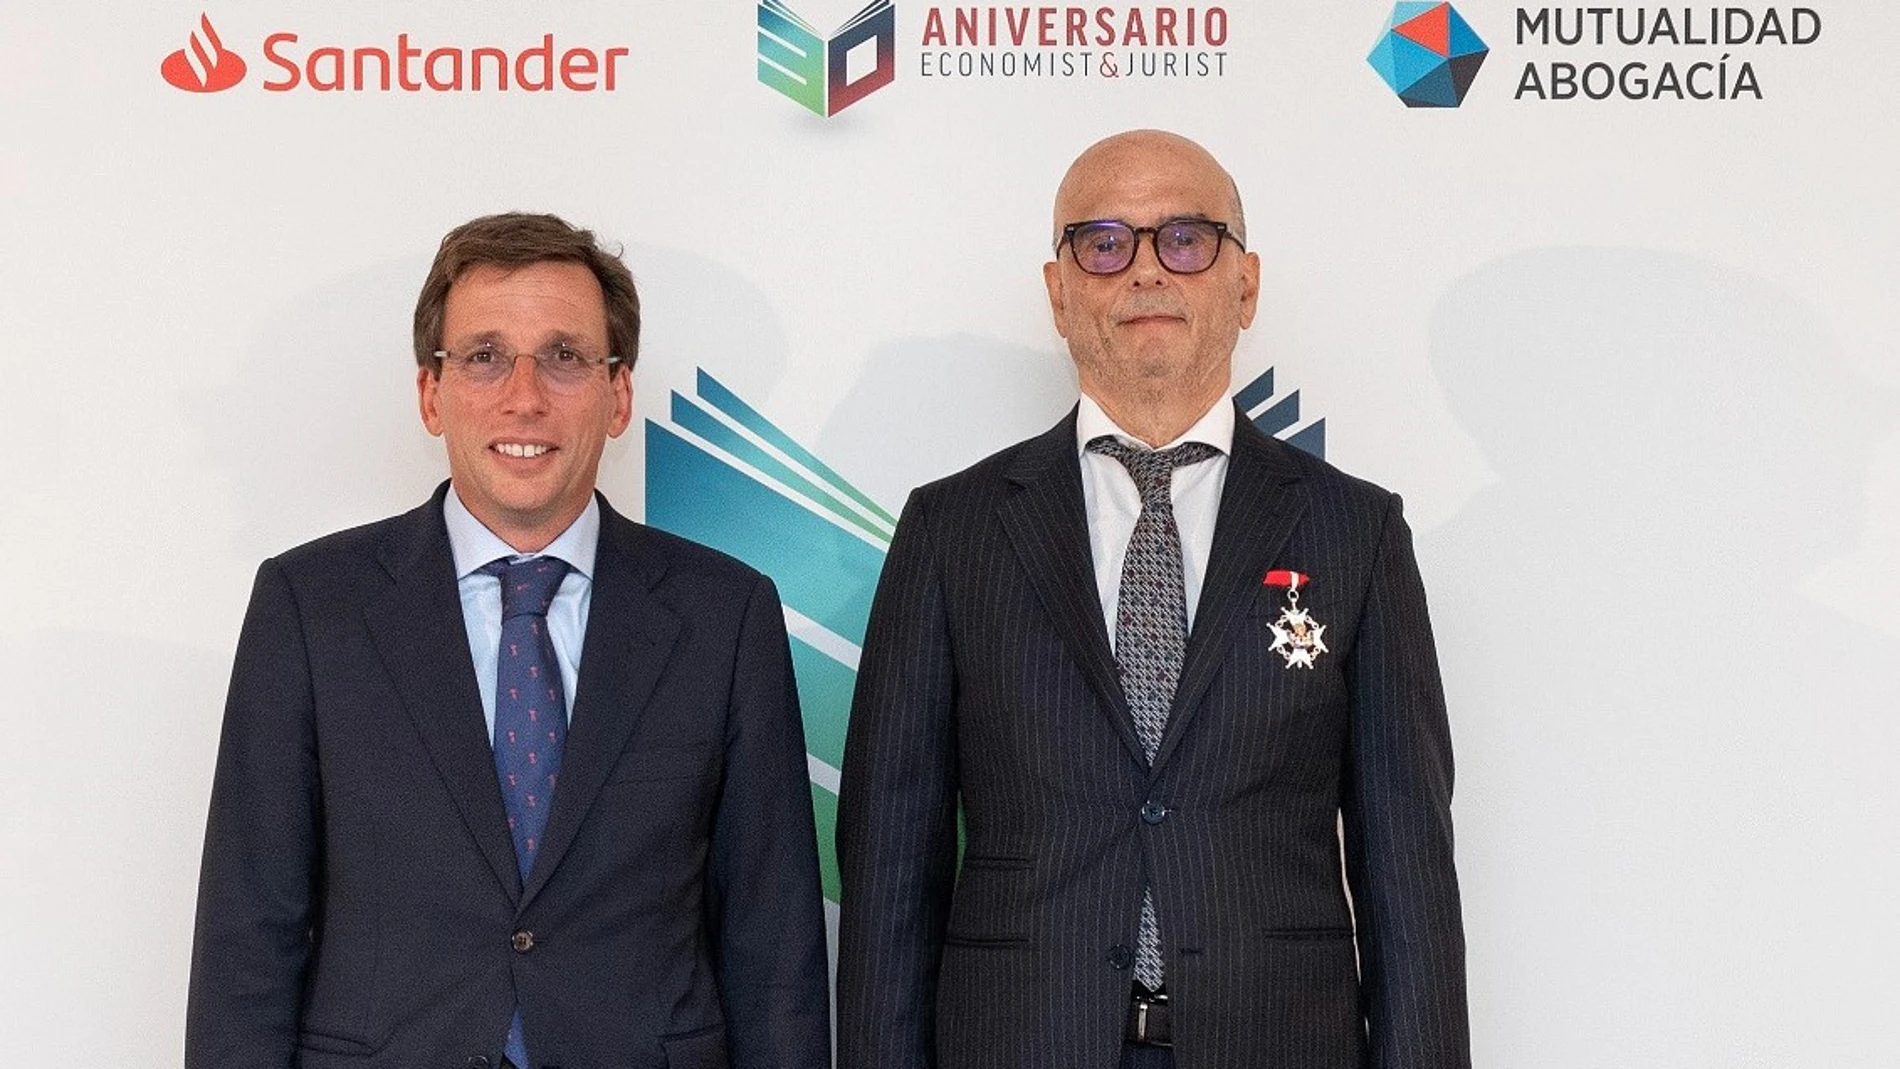 José Luis Martínez Almeidac y Alejandro Pinto durante la celebración del 30 aniversario de Economist&Jurist